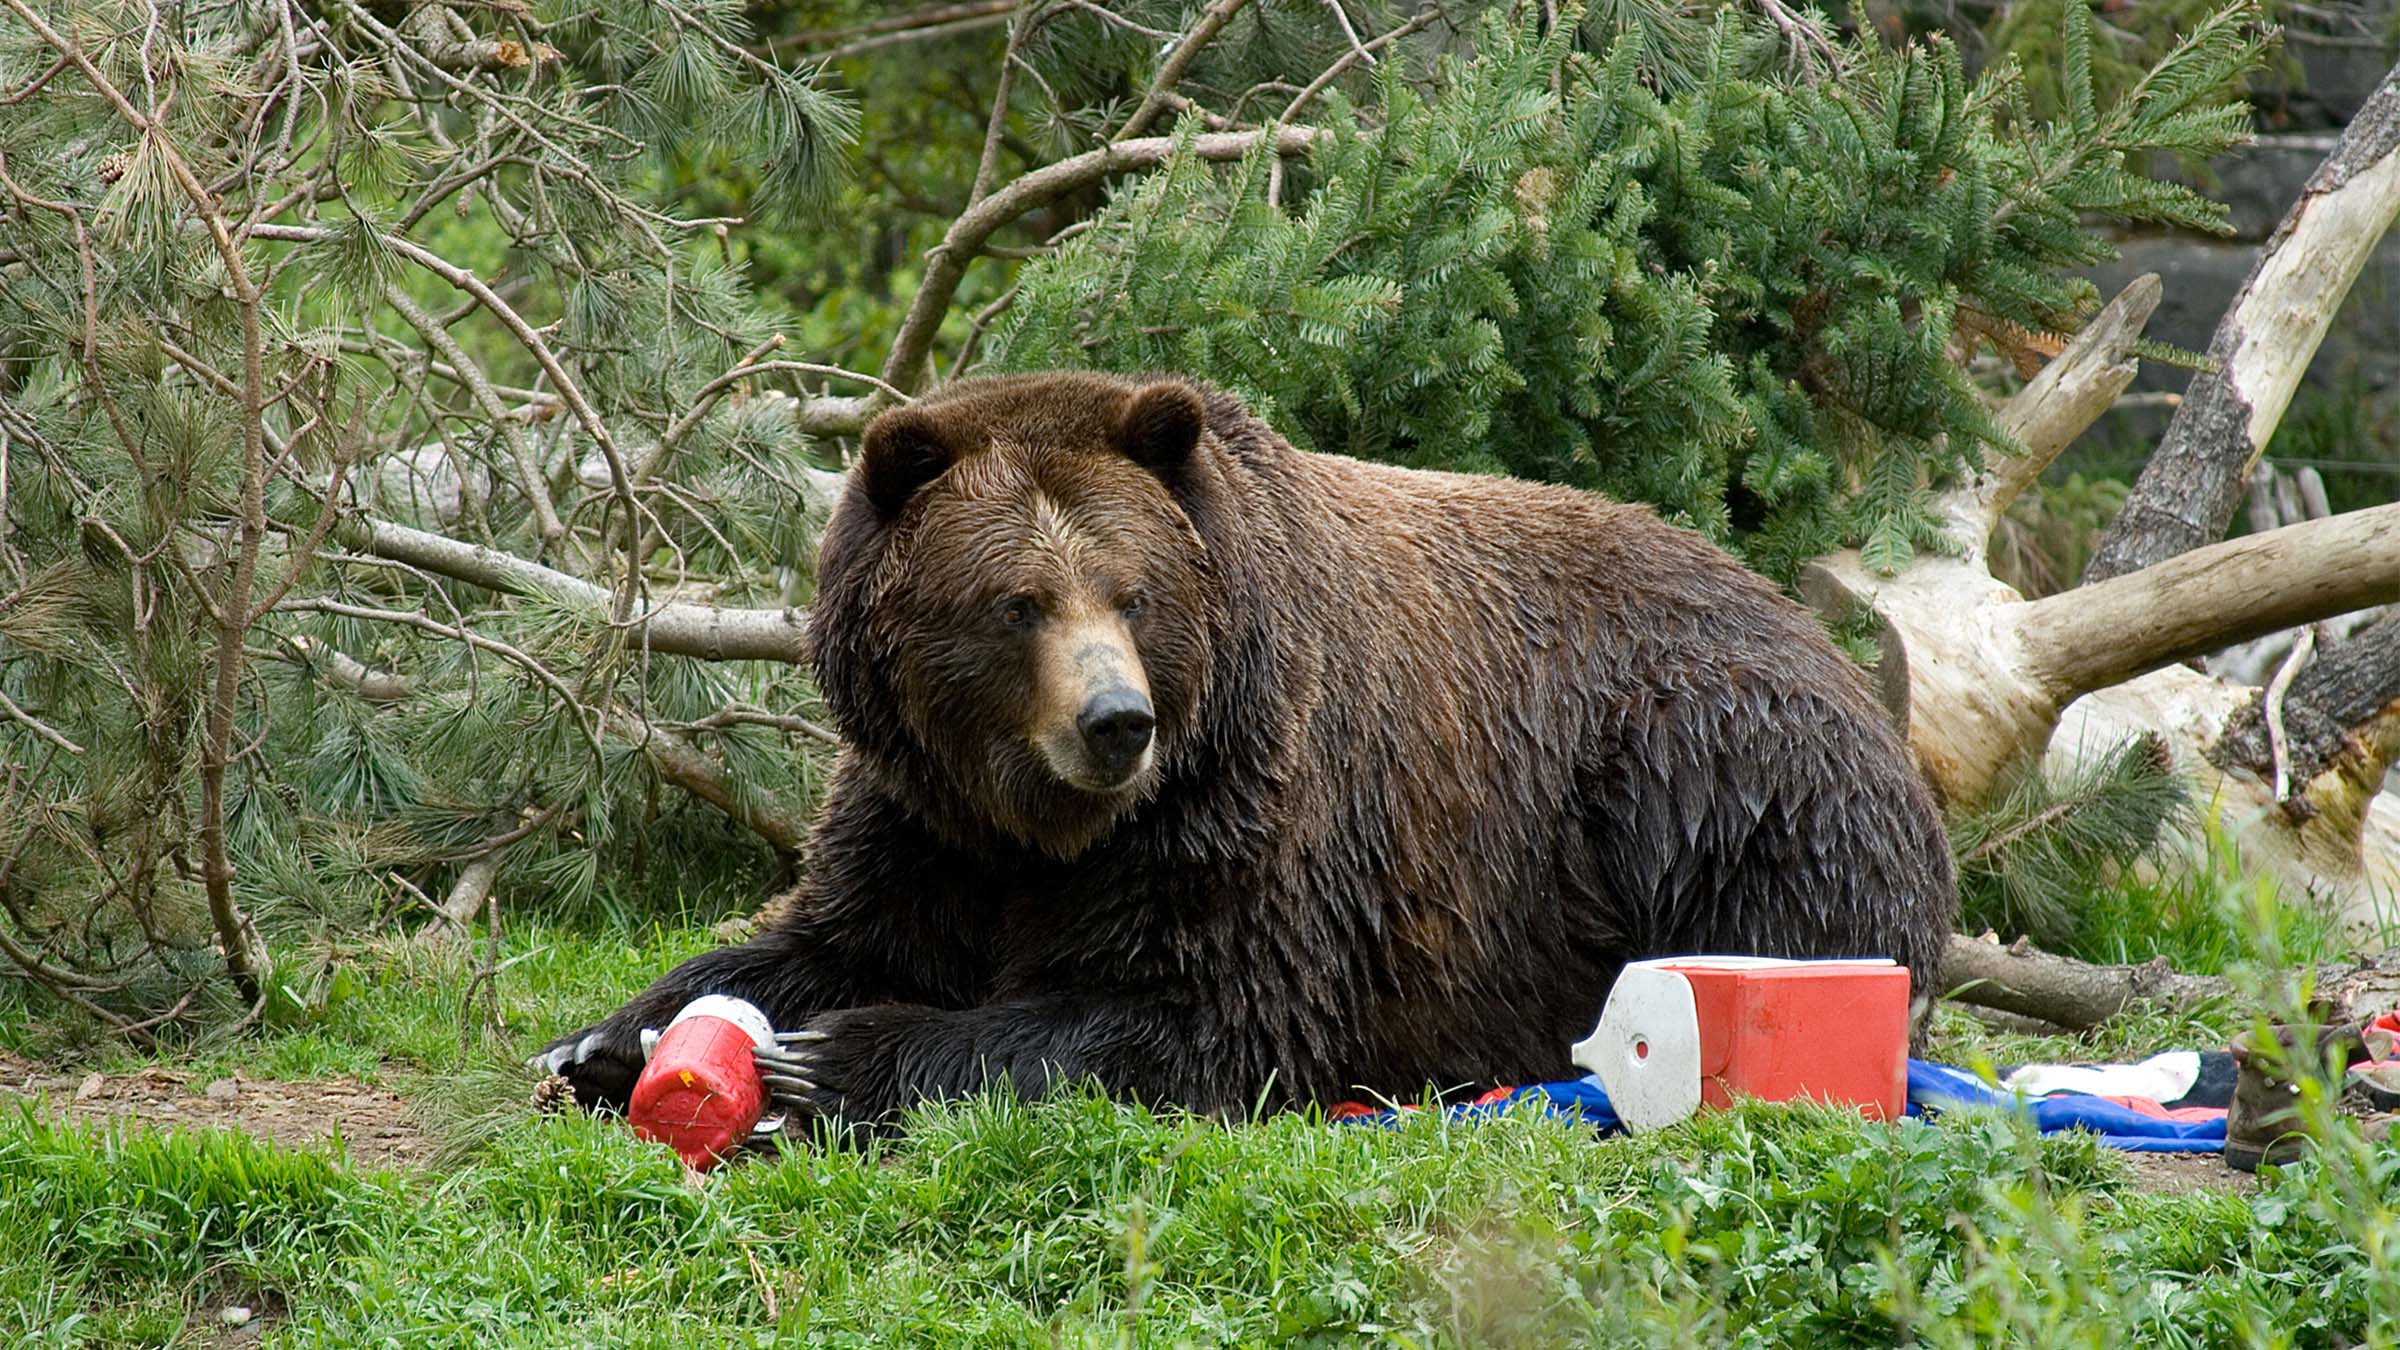 Bear canisters, Ursacks, or bear bags on the Appalachian Trail? - The Trek